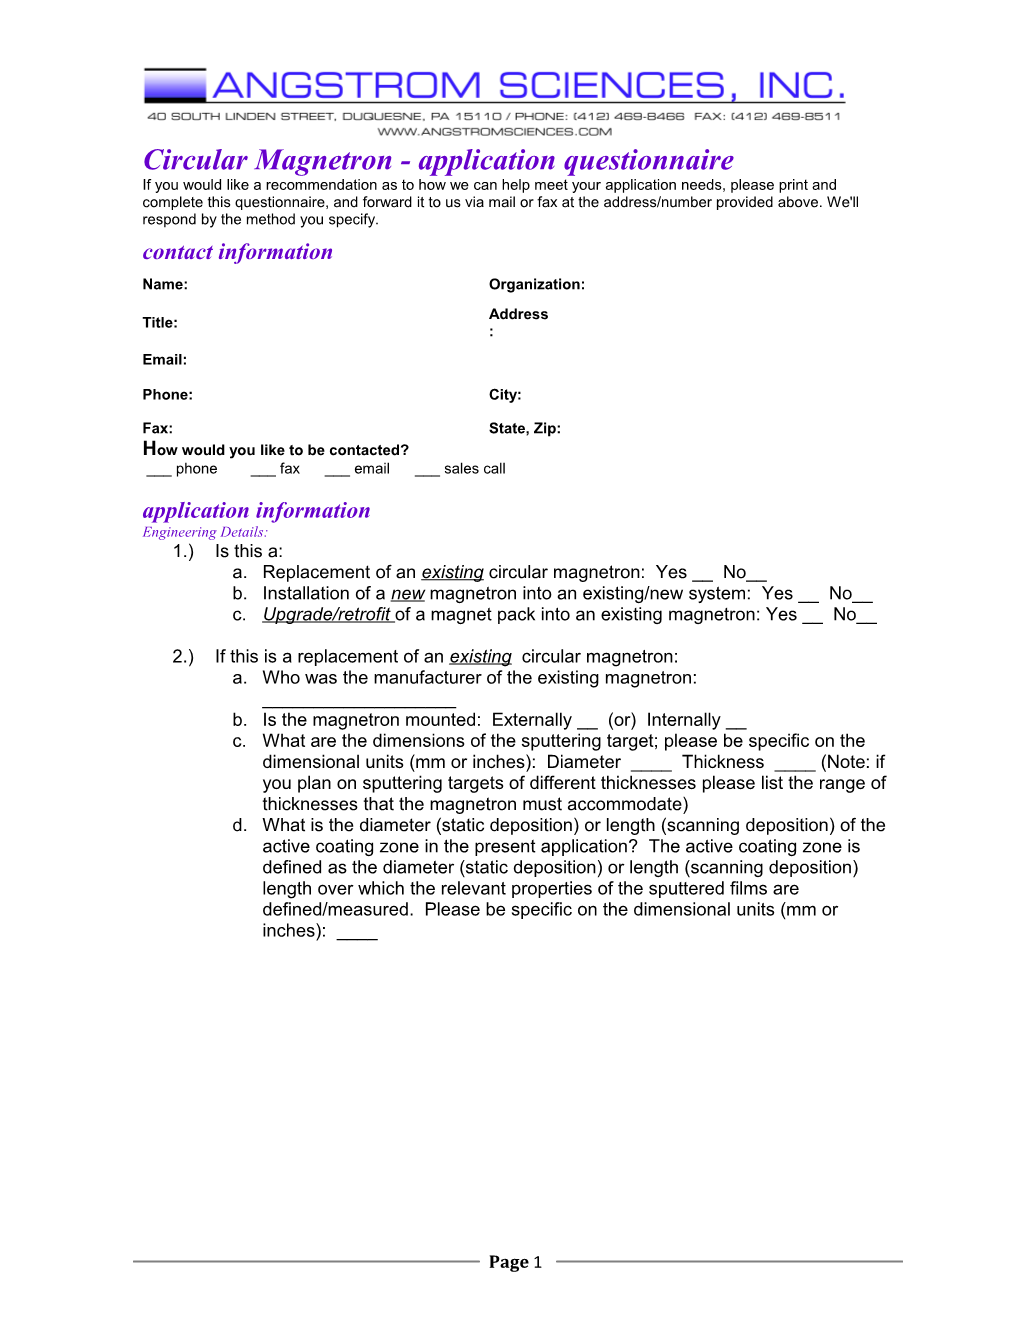 Application Questionnaire.PDF